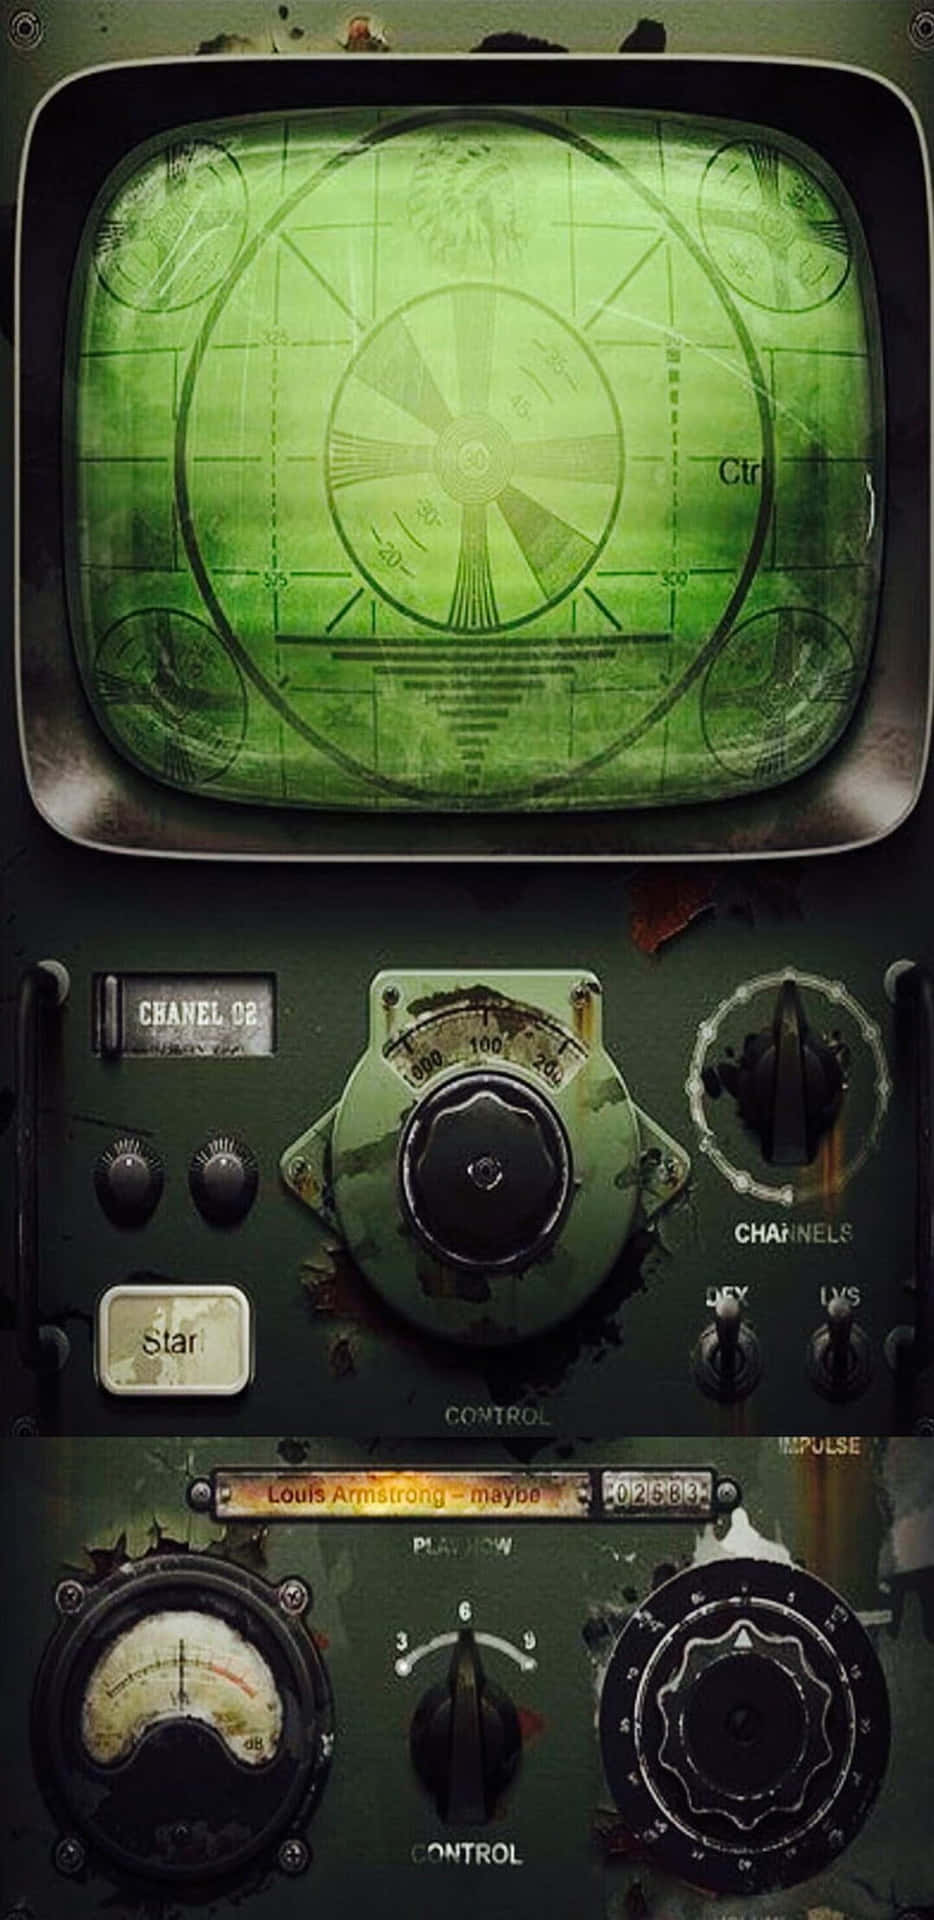 Juegaa Fallout 76 En El Pixel 3xl